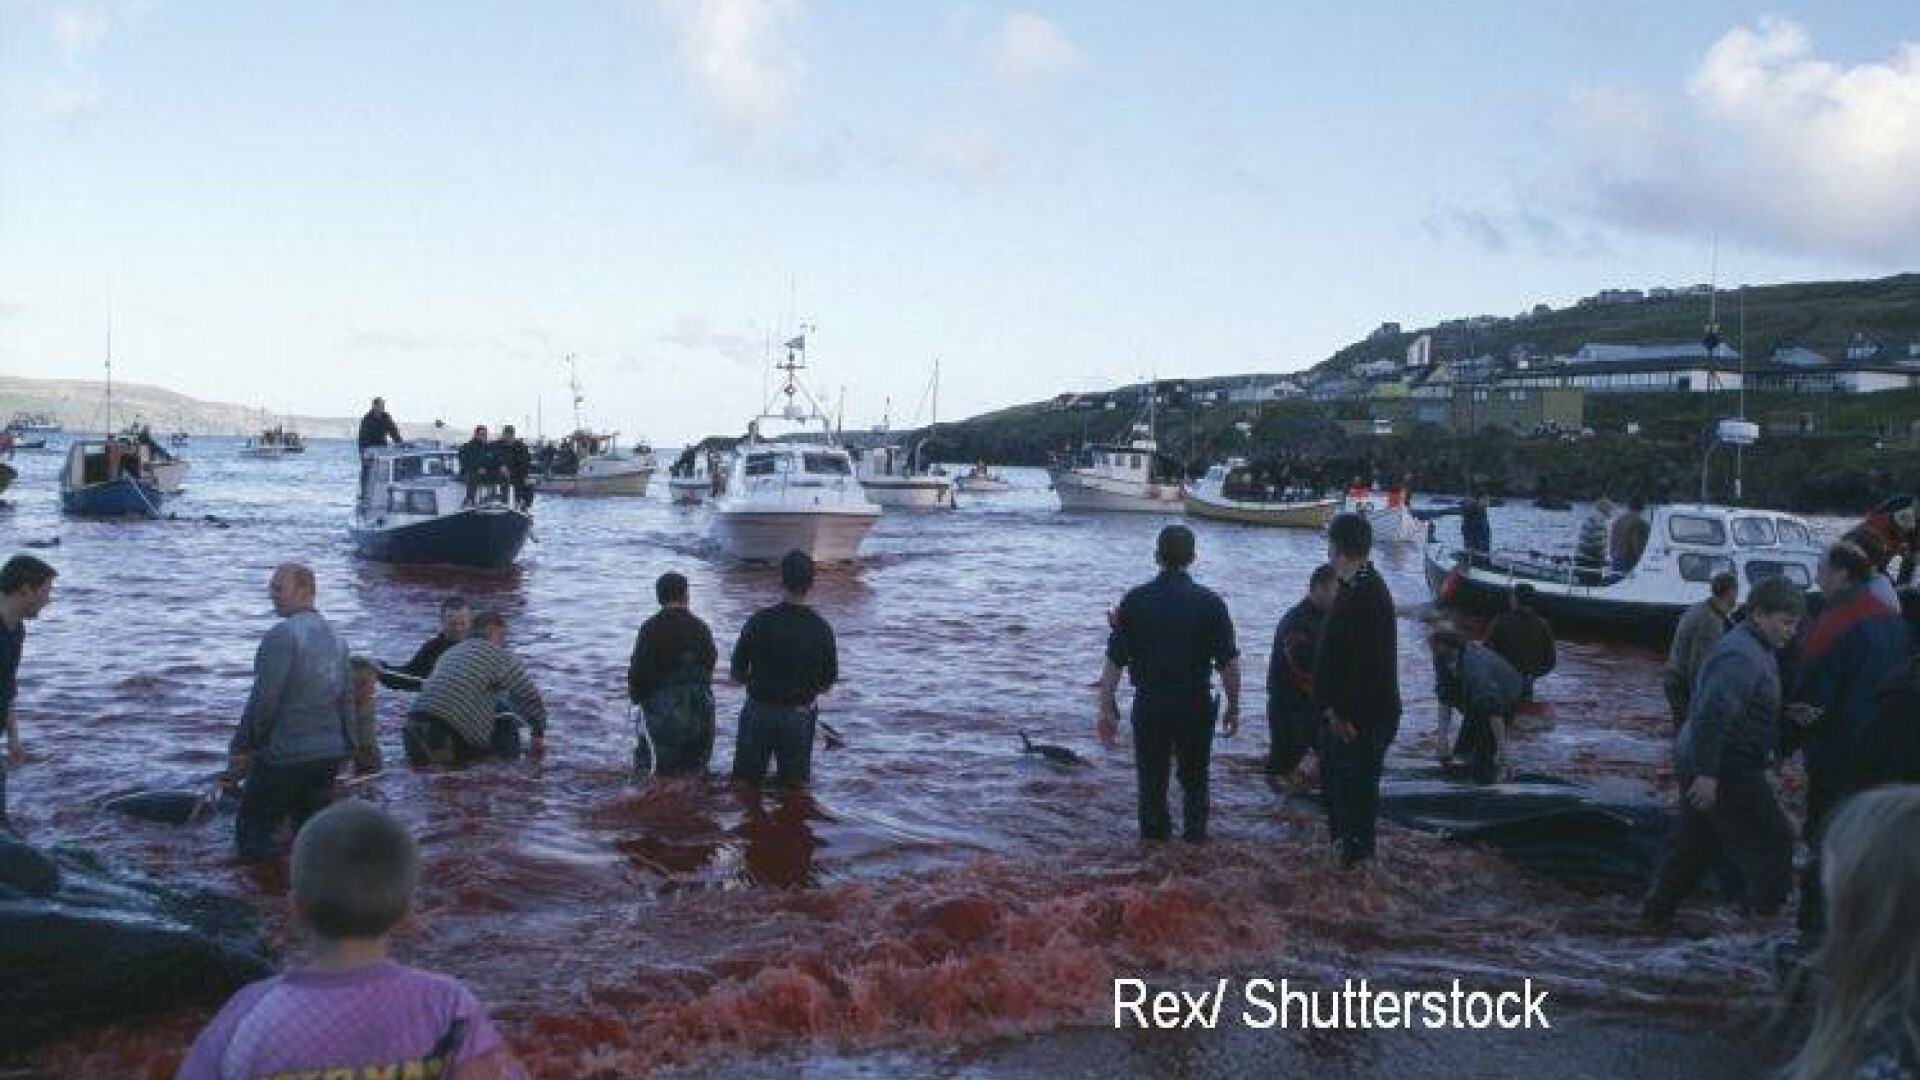 Baia de sange din Insulele Feroe, dupa uciderea balenelor